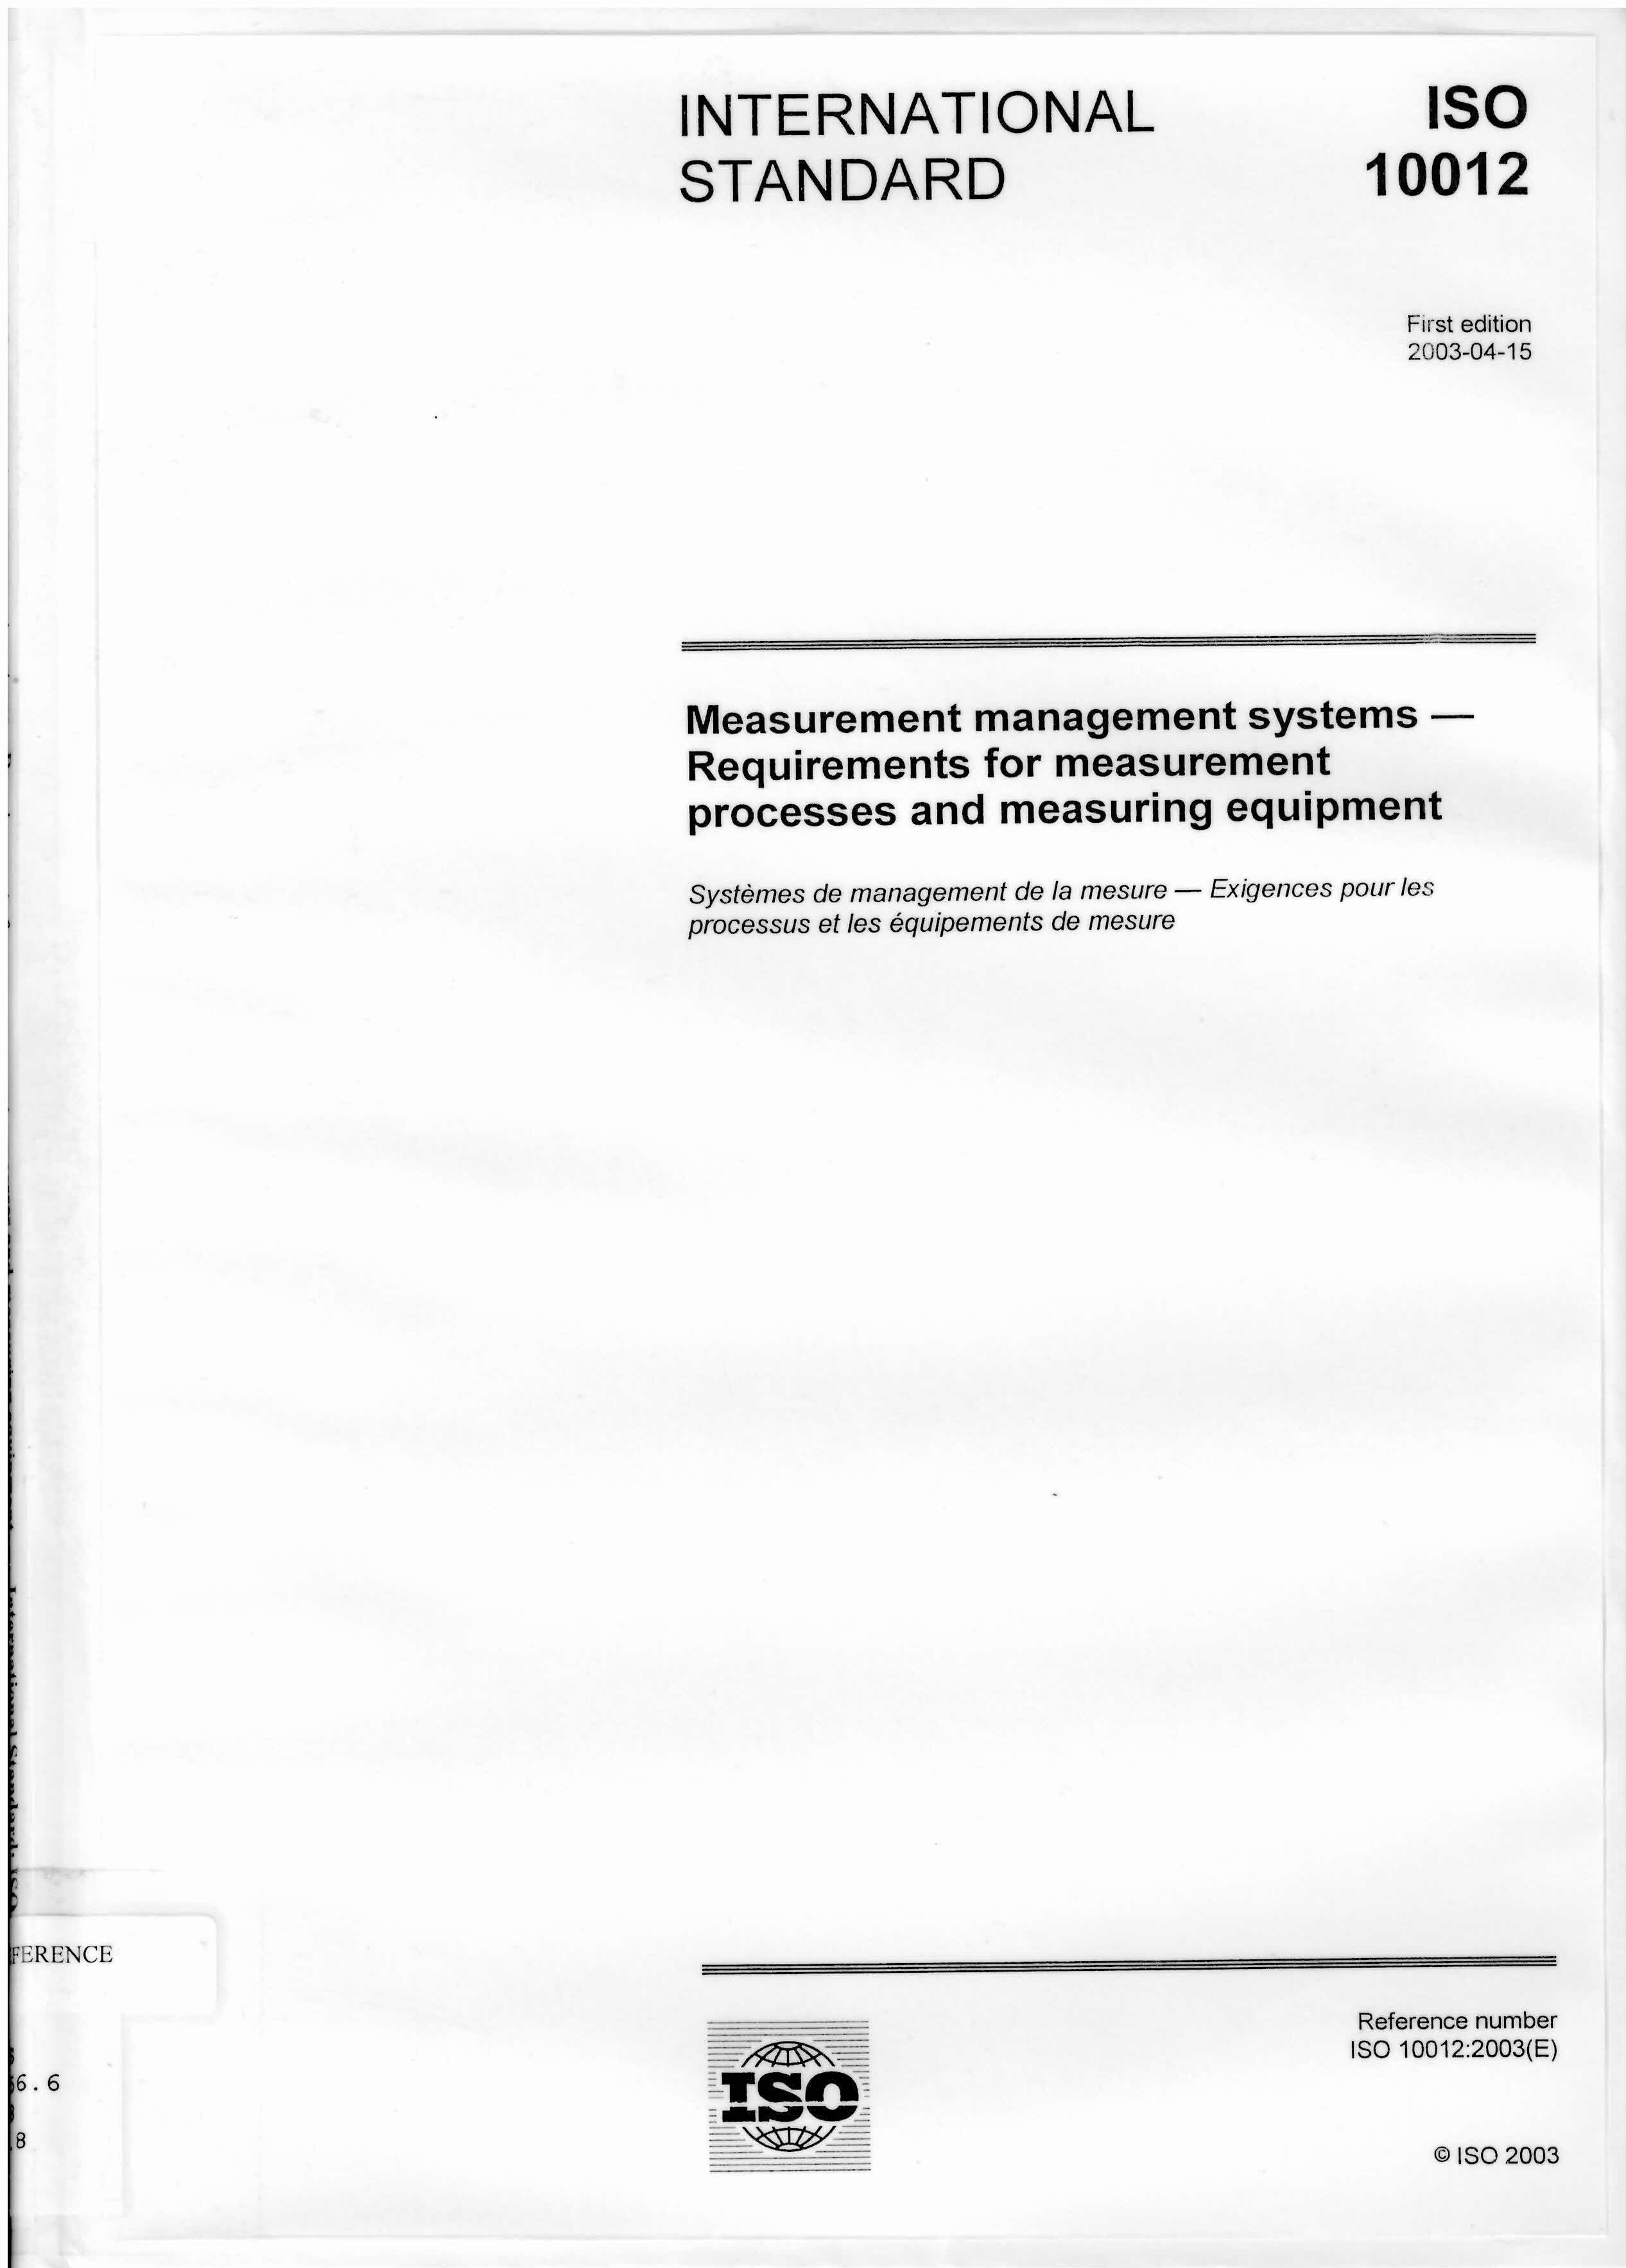 Measurement management systems : requirements for measurement processes and measuring equipment = Systemes de management de la mesure - exigences pour les processus et les equipements de mesure.